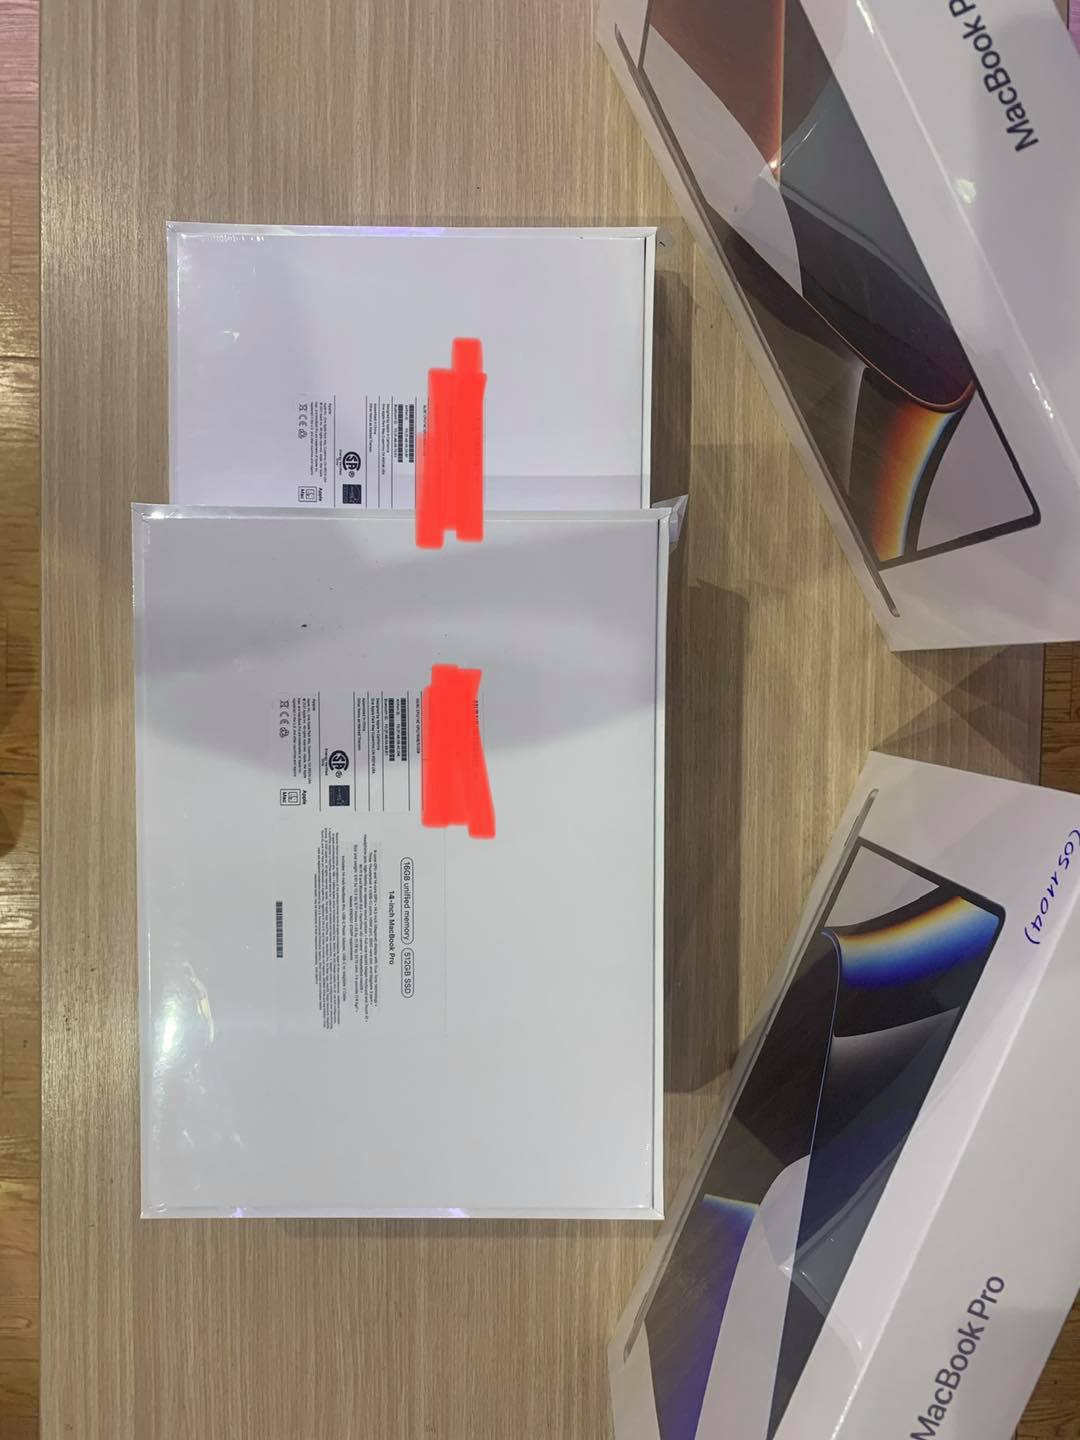 Macbook Pro 14 inch 2021 tại cửa hàng Macstore - Ảnh 1